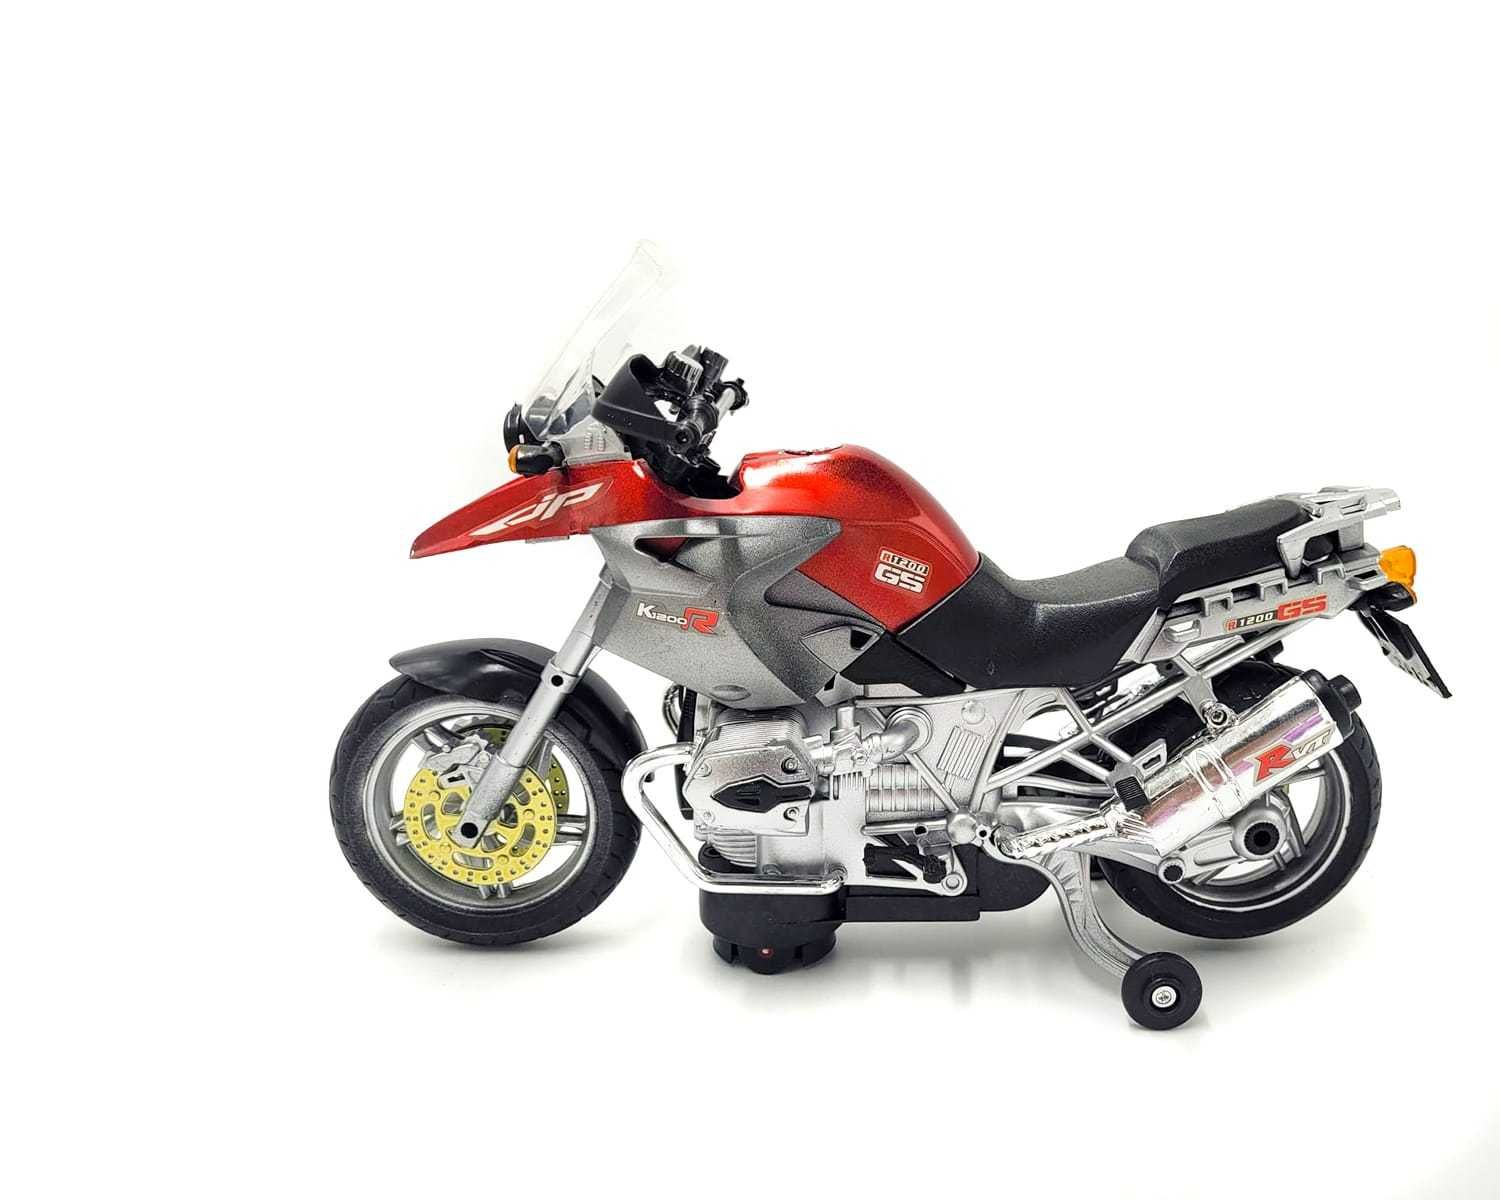 Motocykl motor interaktywny światło dźwięk w skali 1:8 czerwony